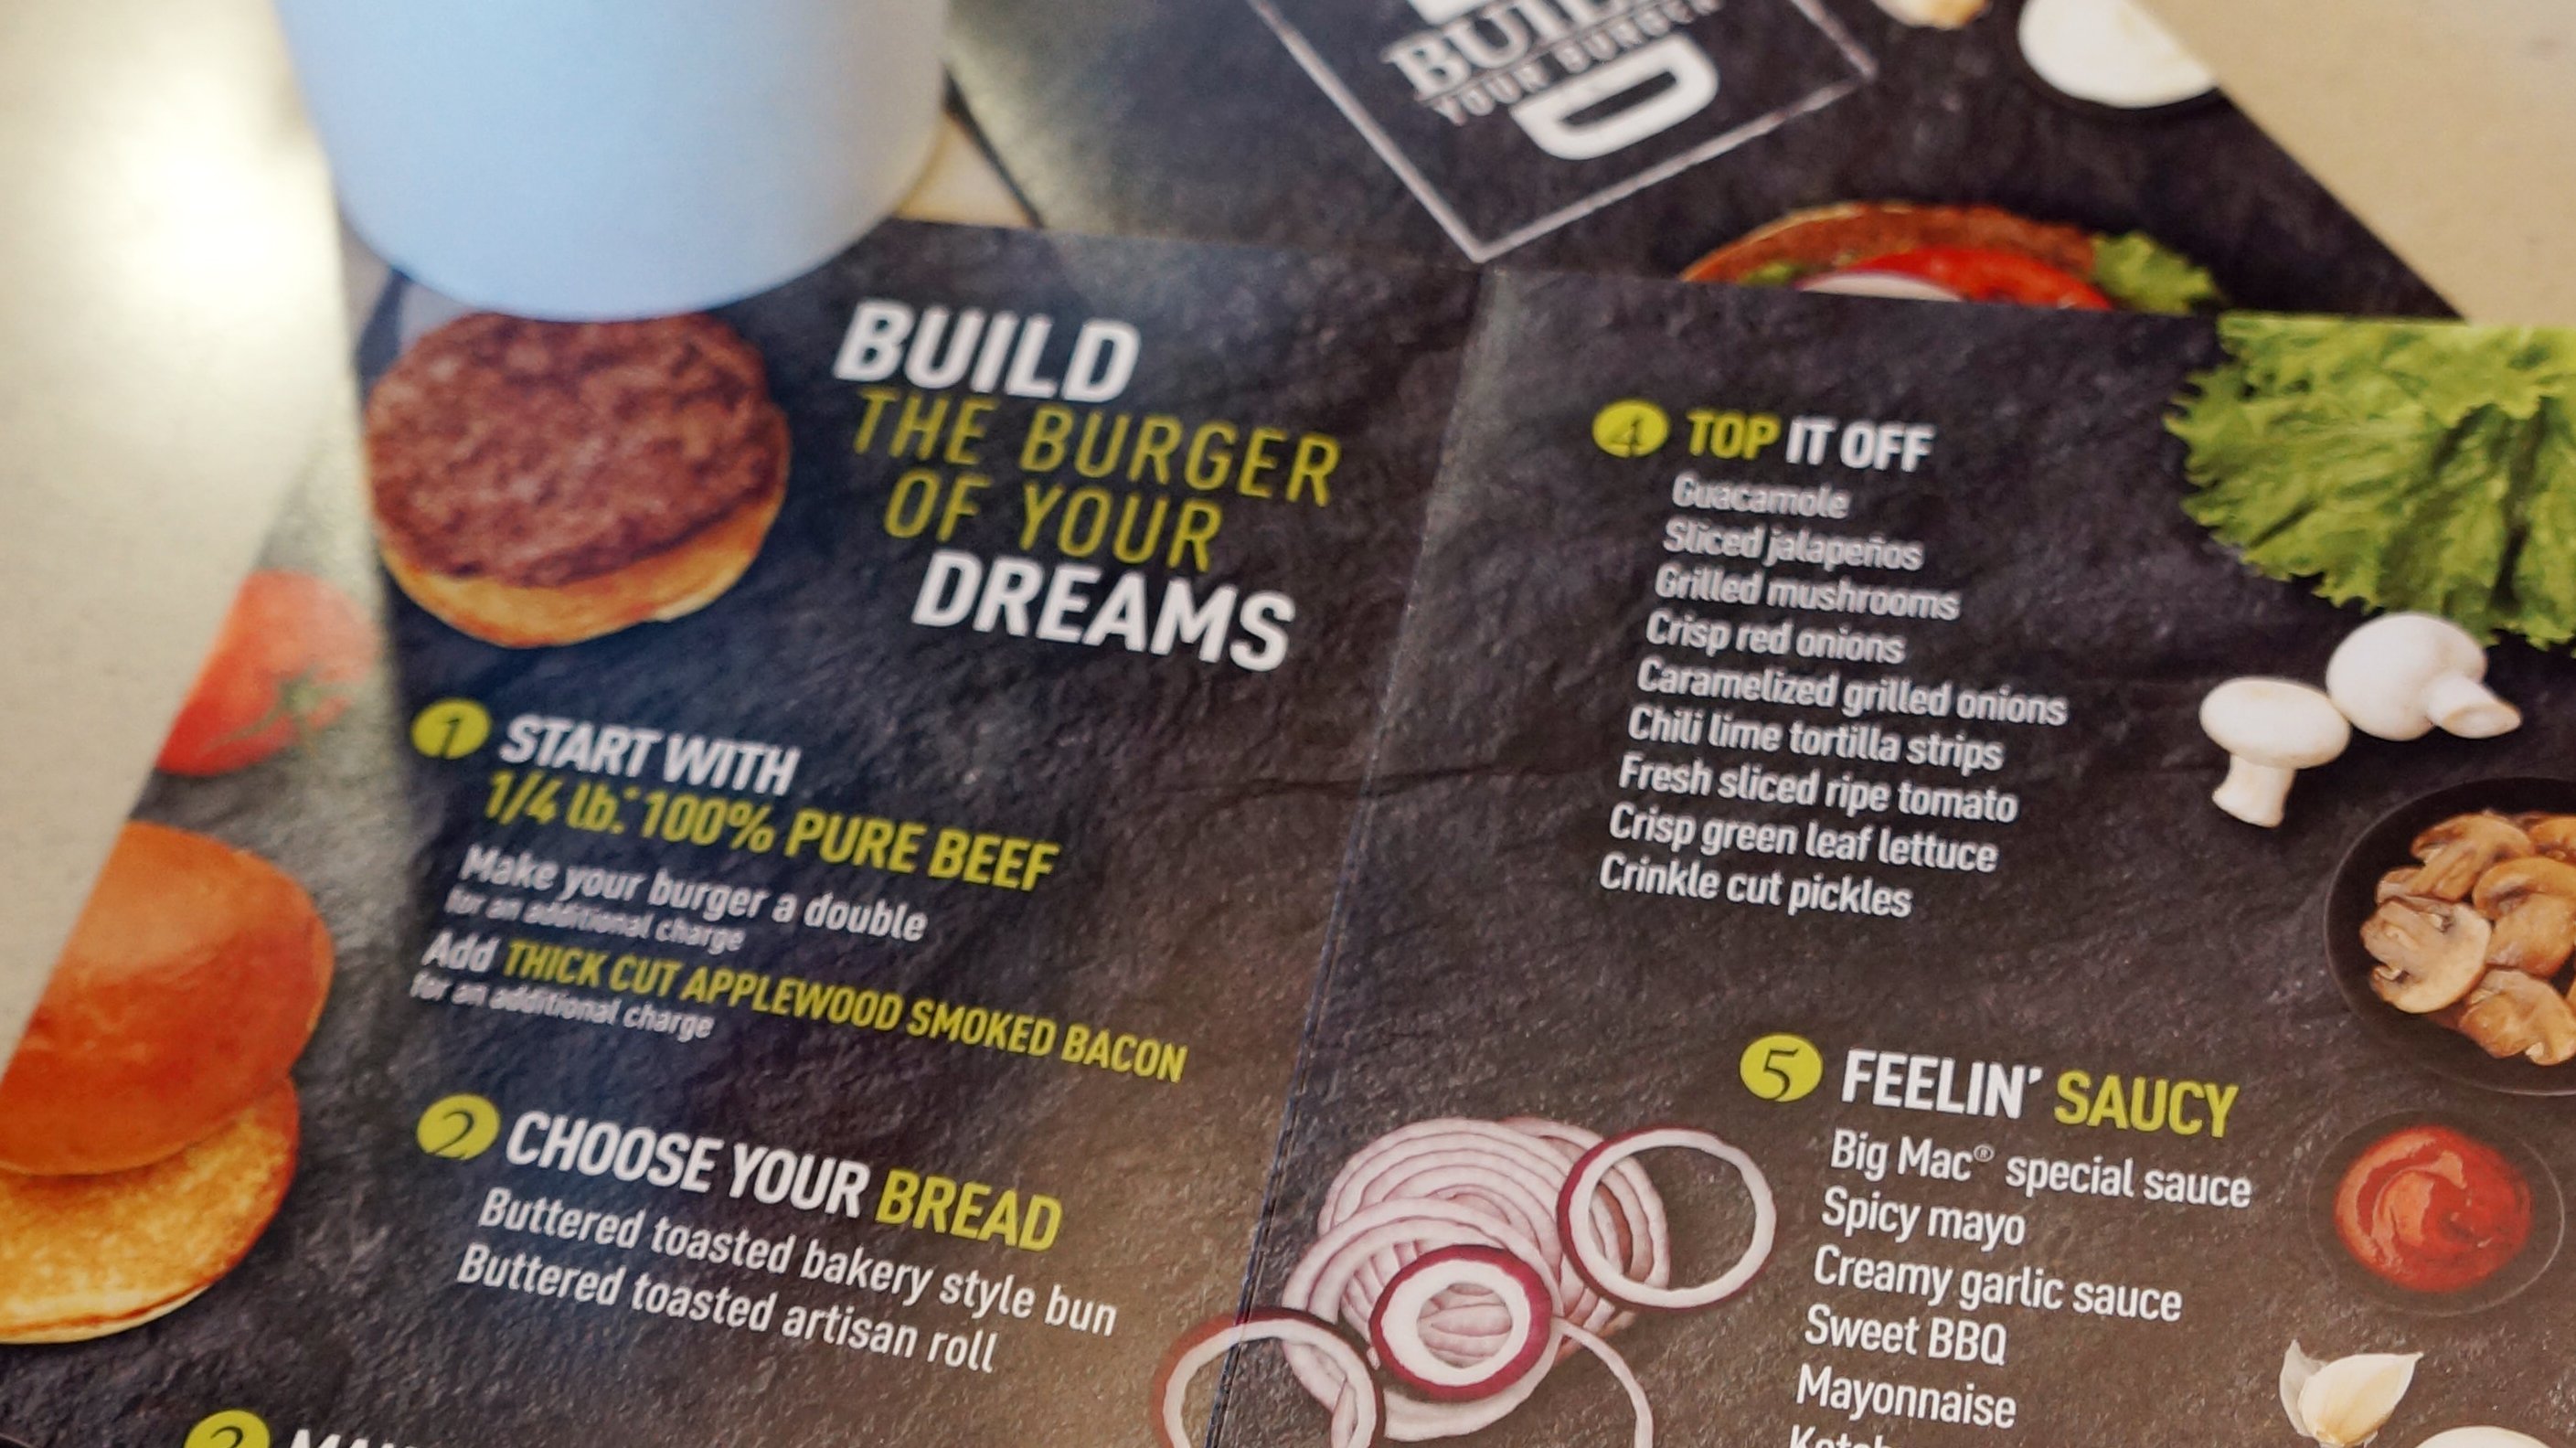 Millennial Marketing Push: Build Burger and Brunch? Money